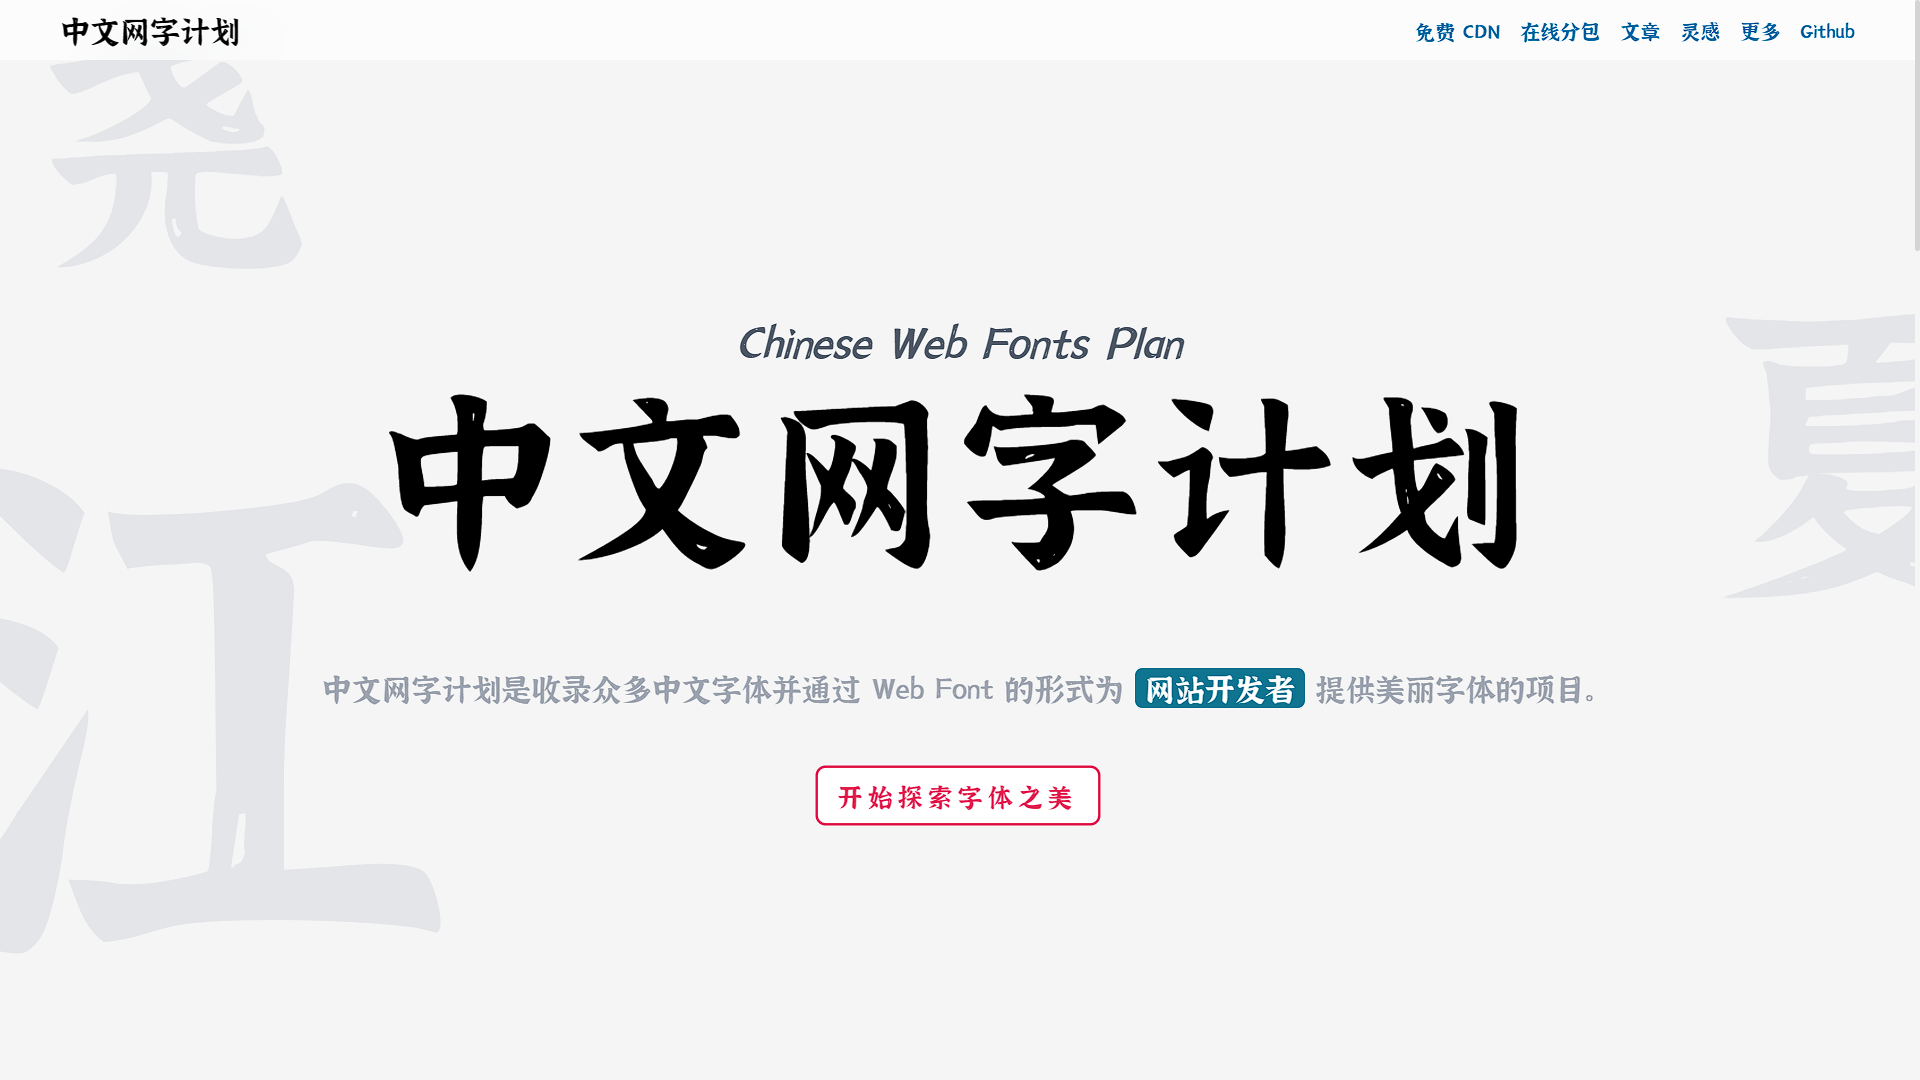 免费可商用的中文Web 字体库-中文网字计划